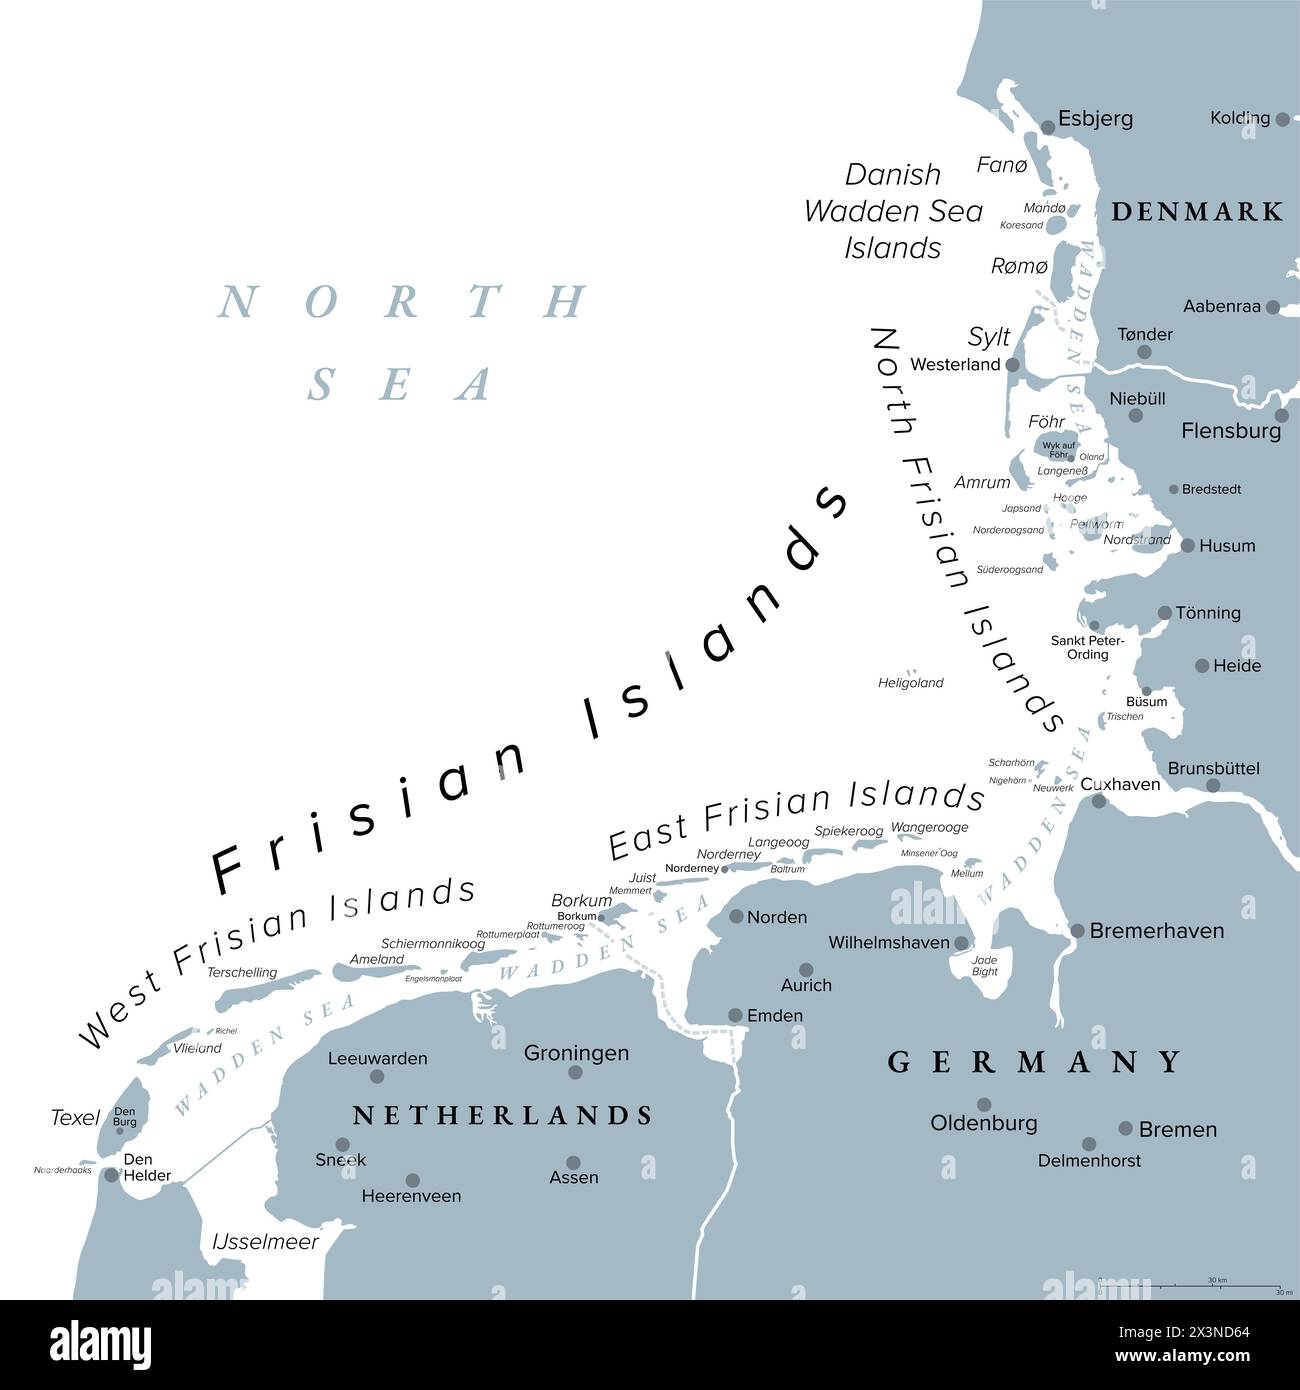 Isole Frisone, mappa politica grigia. Isole del Mare di Wadden, arcipelago nel Mare del Nord in Europa, che si estende dai Paesi Bassi attraverso la Germania fino alla Danimarca. Foto Stock